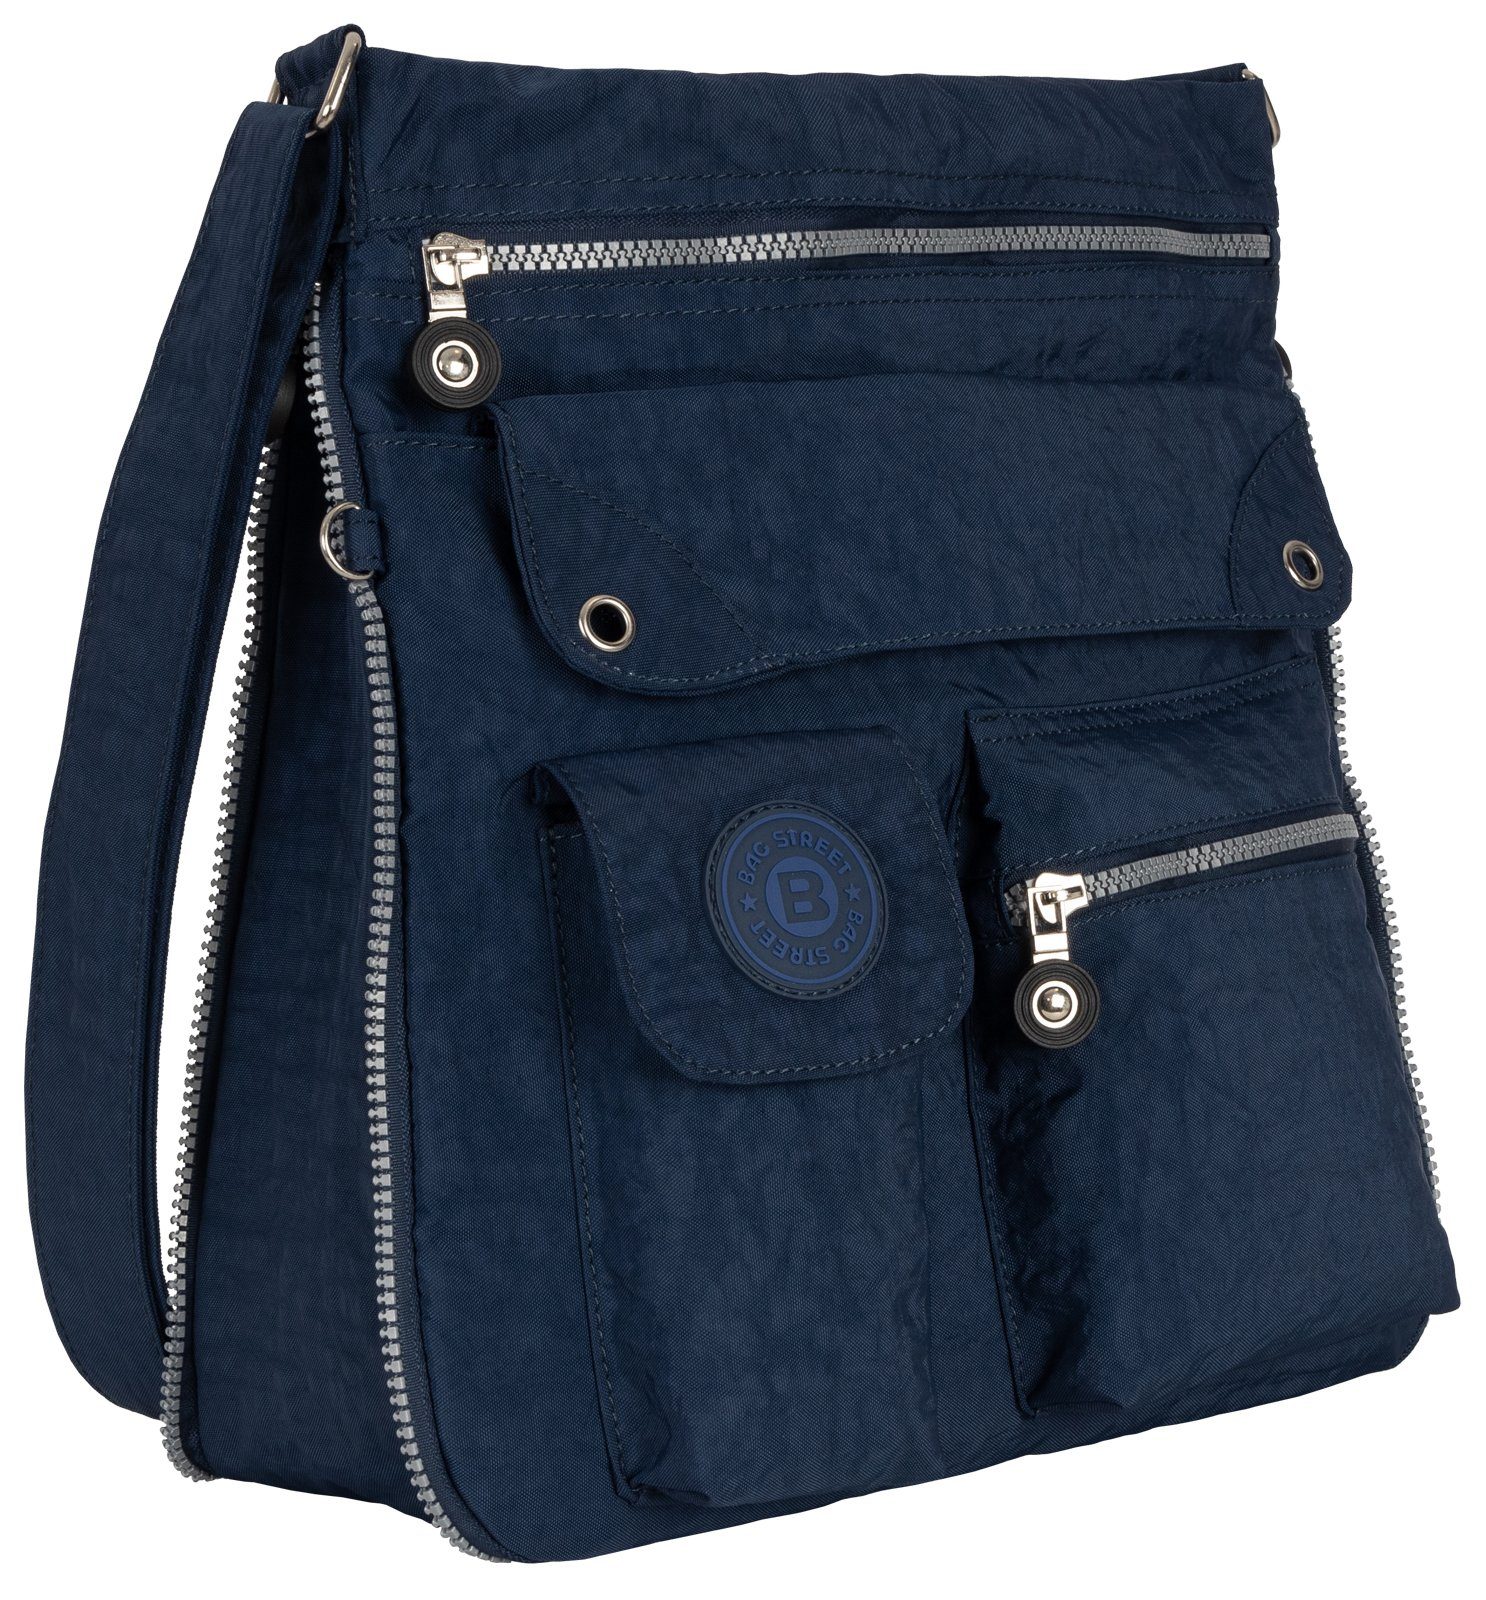 Damentasche BAG Schultertasche, tragbar Umhängetasche Schlüsseltasche Blau als Schultertasche Handtasche Umhängetasche STREET Schwarz,